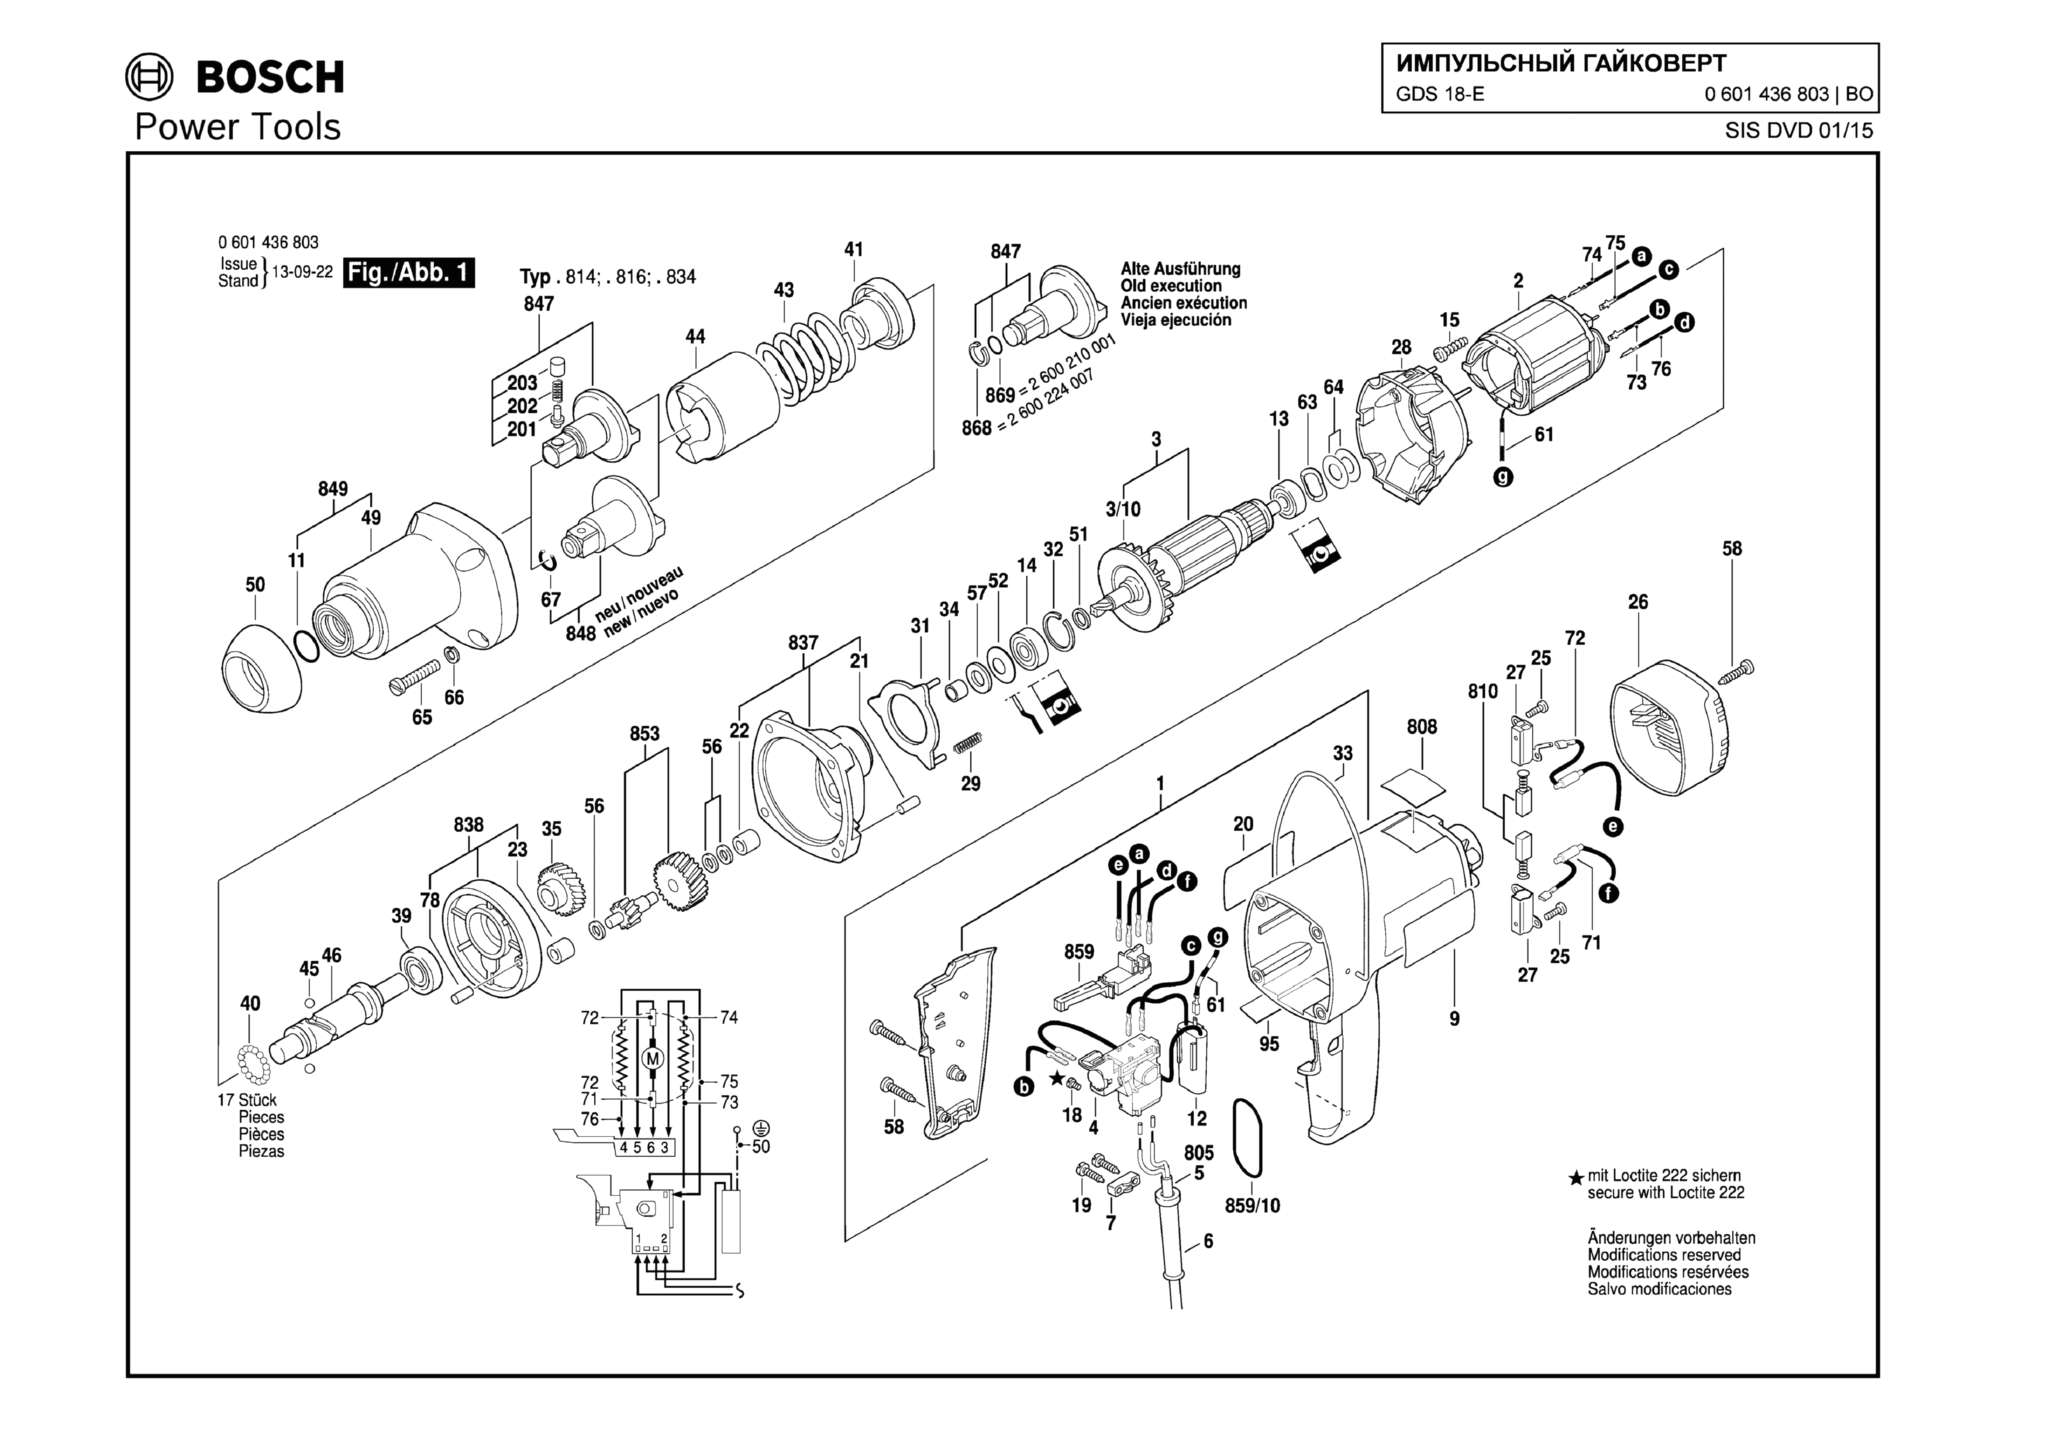 Запчасти, схема и деталировка Bosch GDS 18-E (ТИП 0601436803)